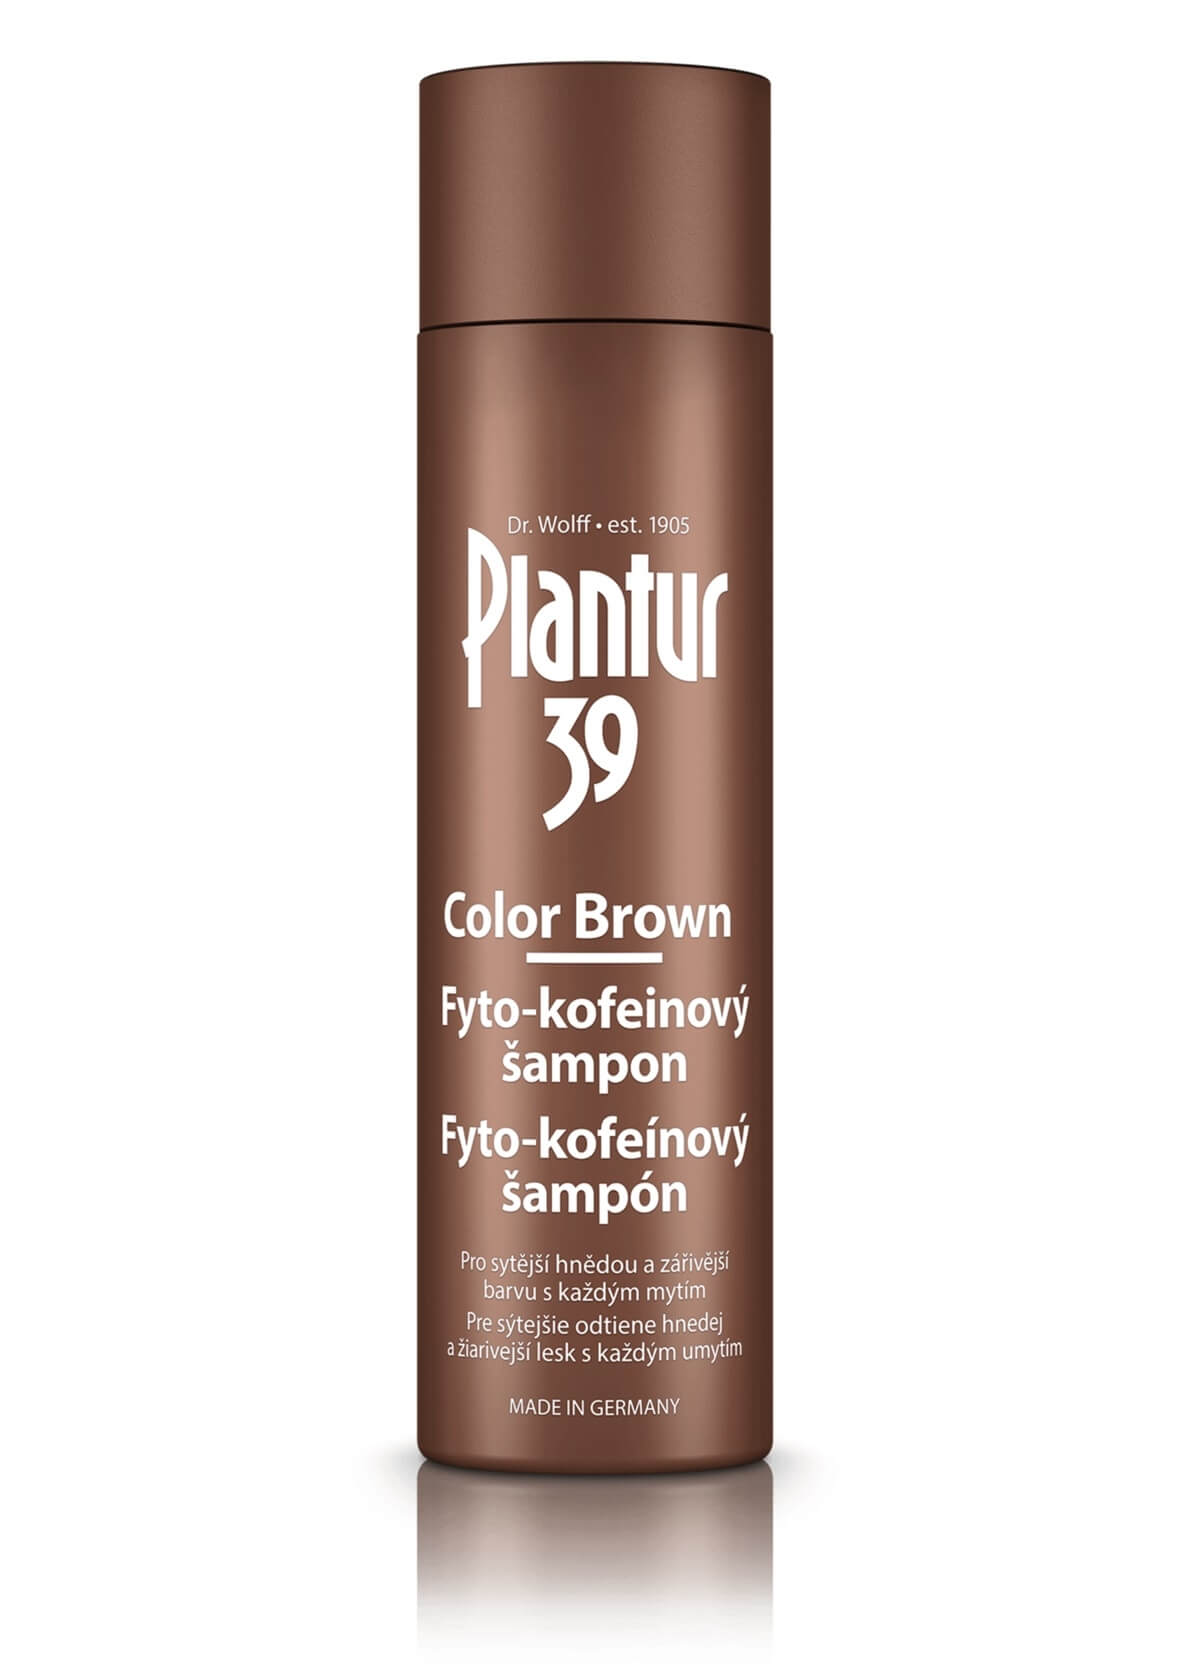 Zobrazit detail výrobku Plantur Fyto-kofeinovy šampon Color Brown pro hnědé vlasy 250 ml